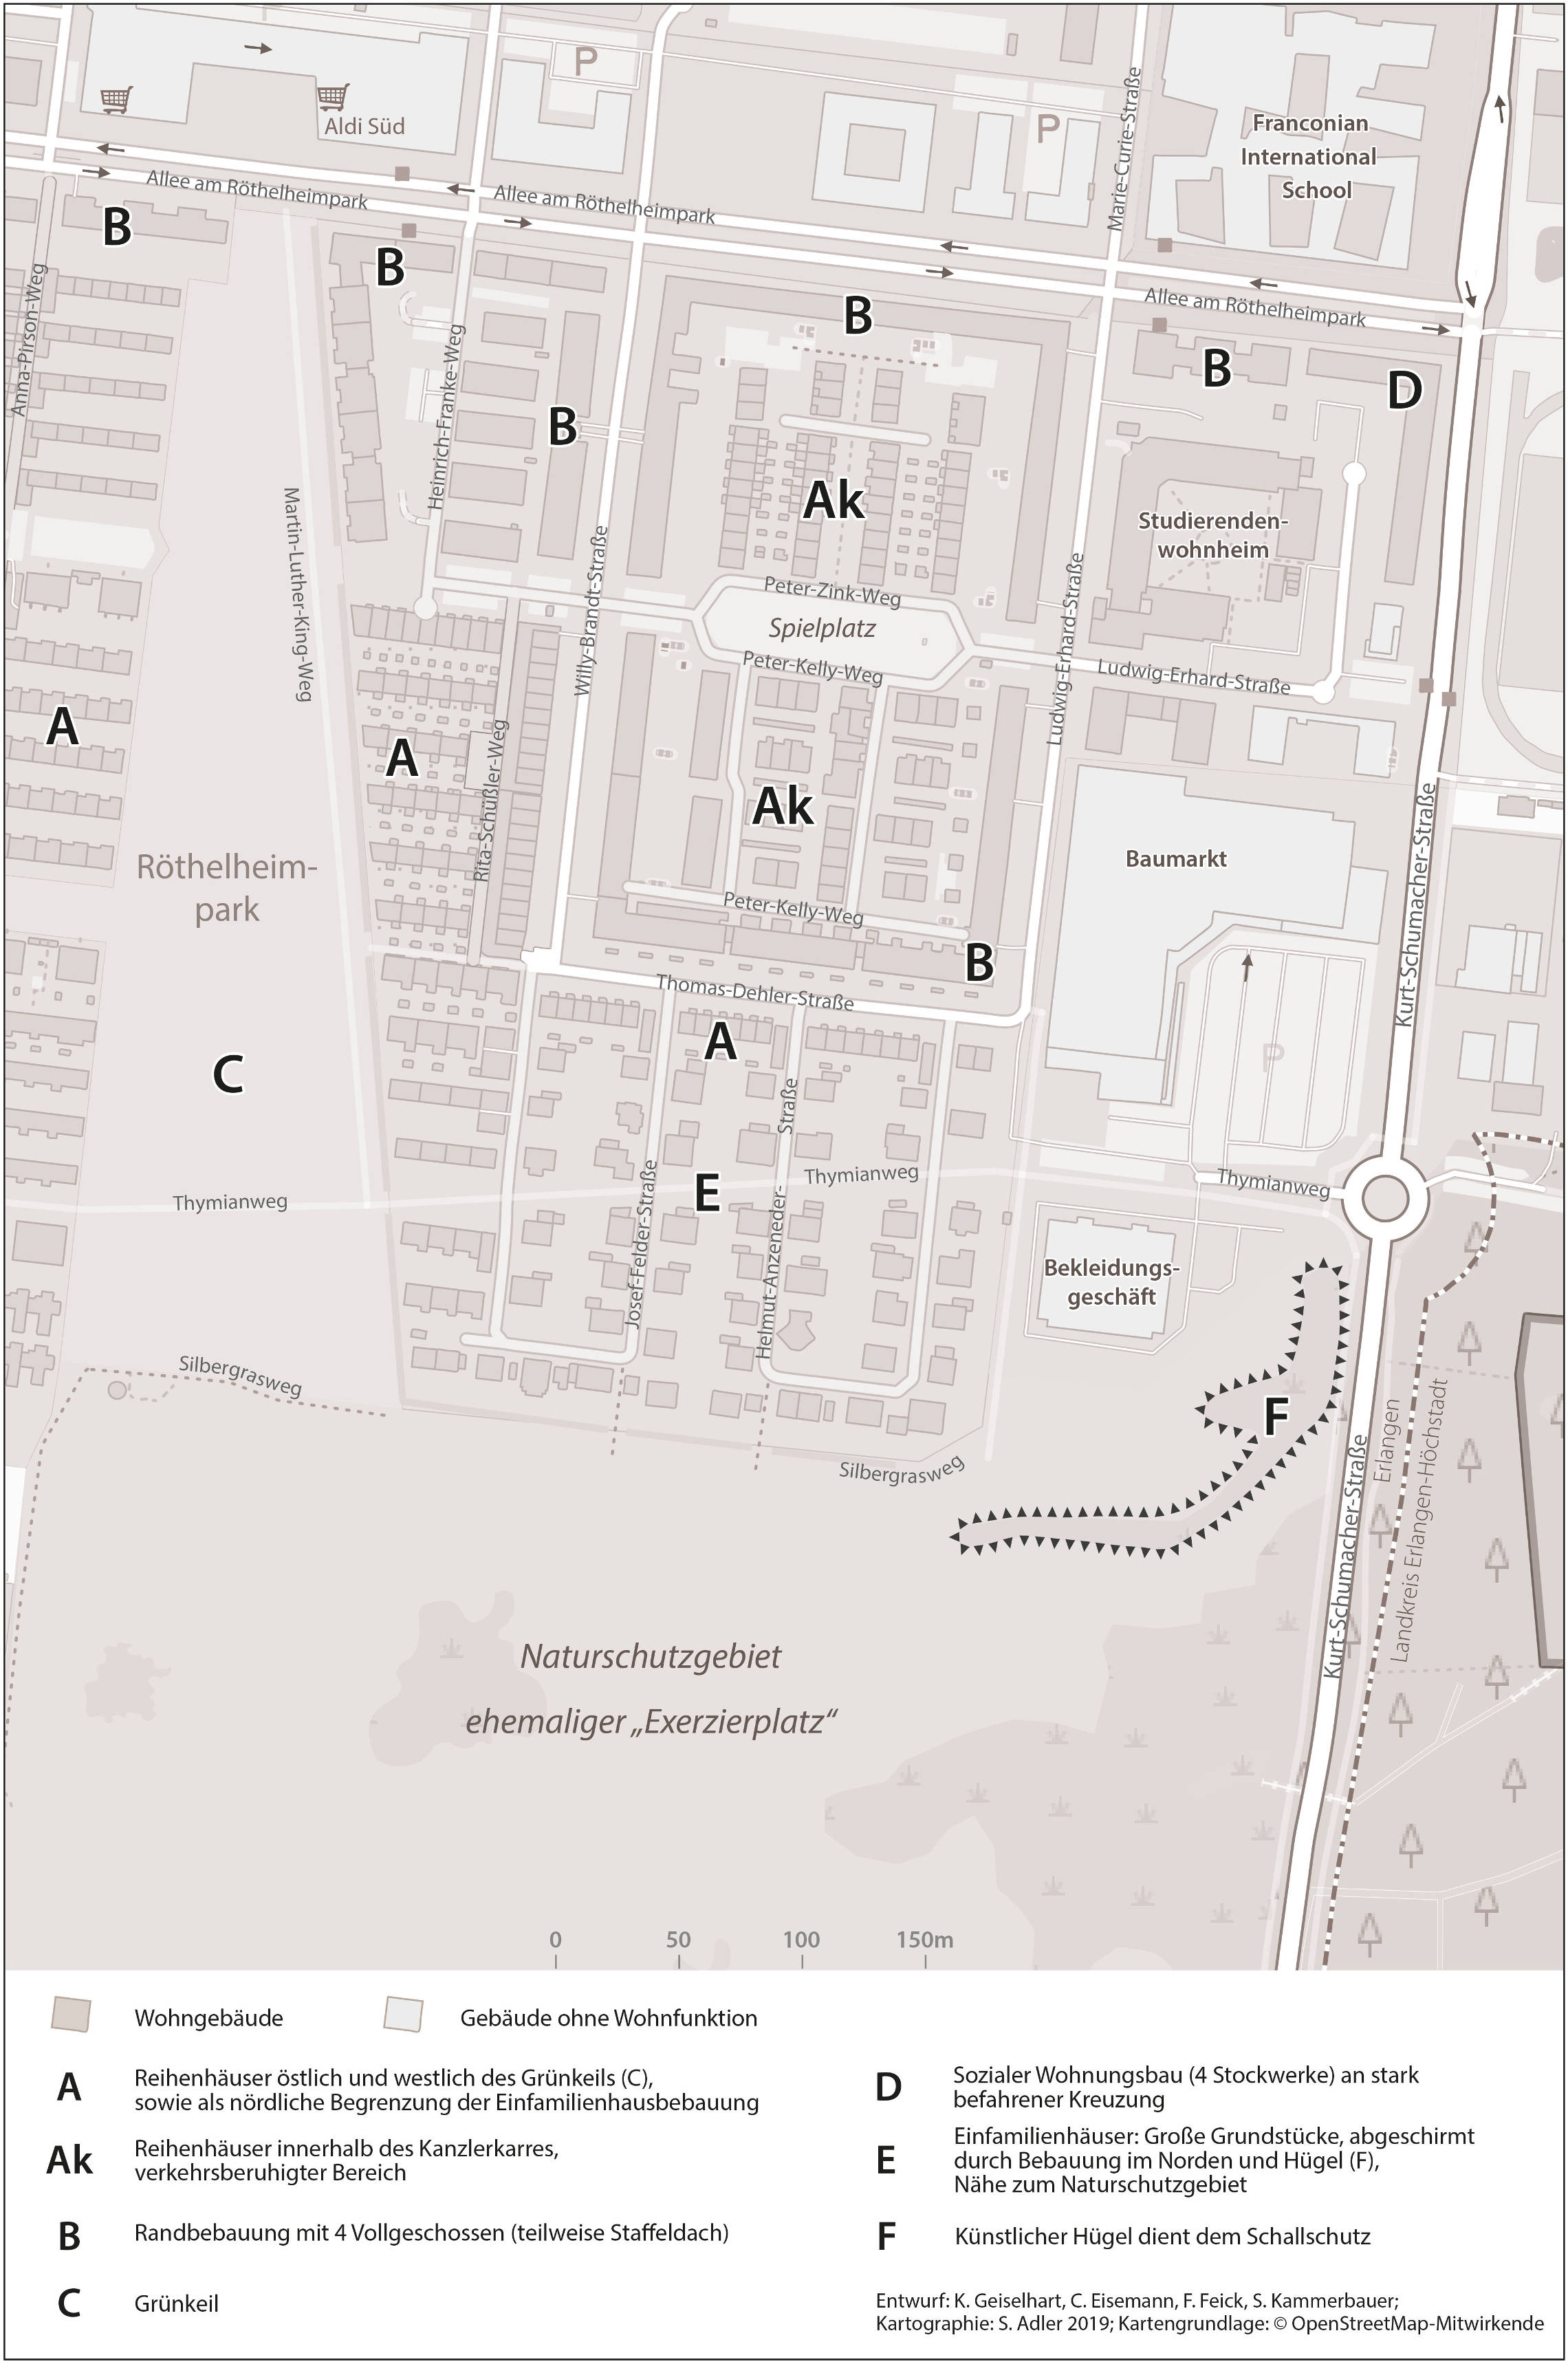 Abb. 4 Wohngebäudestruktur eines Quartiers im Röthelheimpark (Quelle: Eigene Darstellung, Kartographie: Stephan Adler)